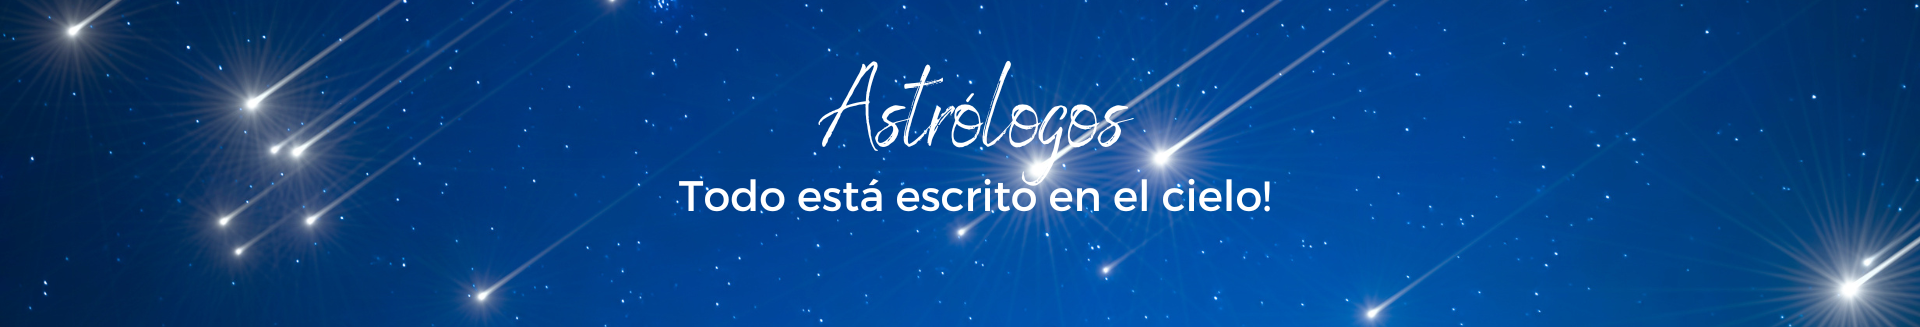 Astrólogos: ¡Todo está escrito en el cielo!